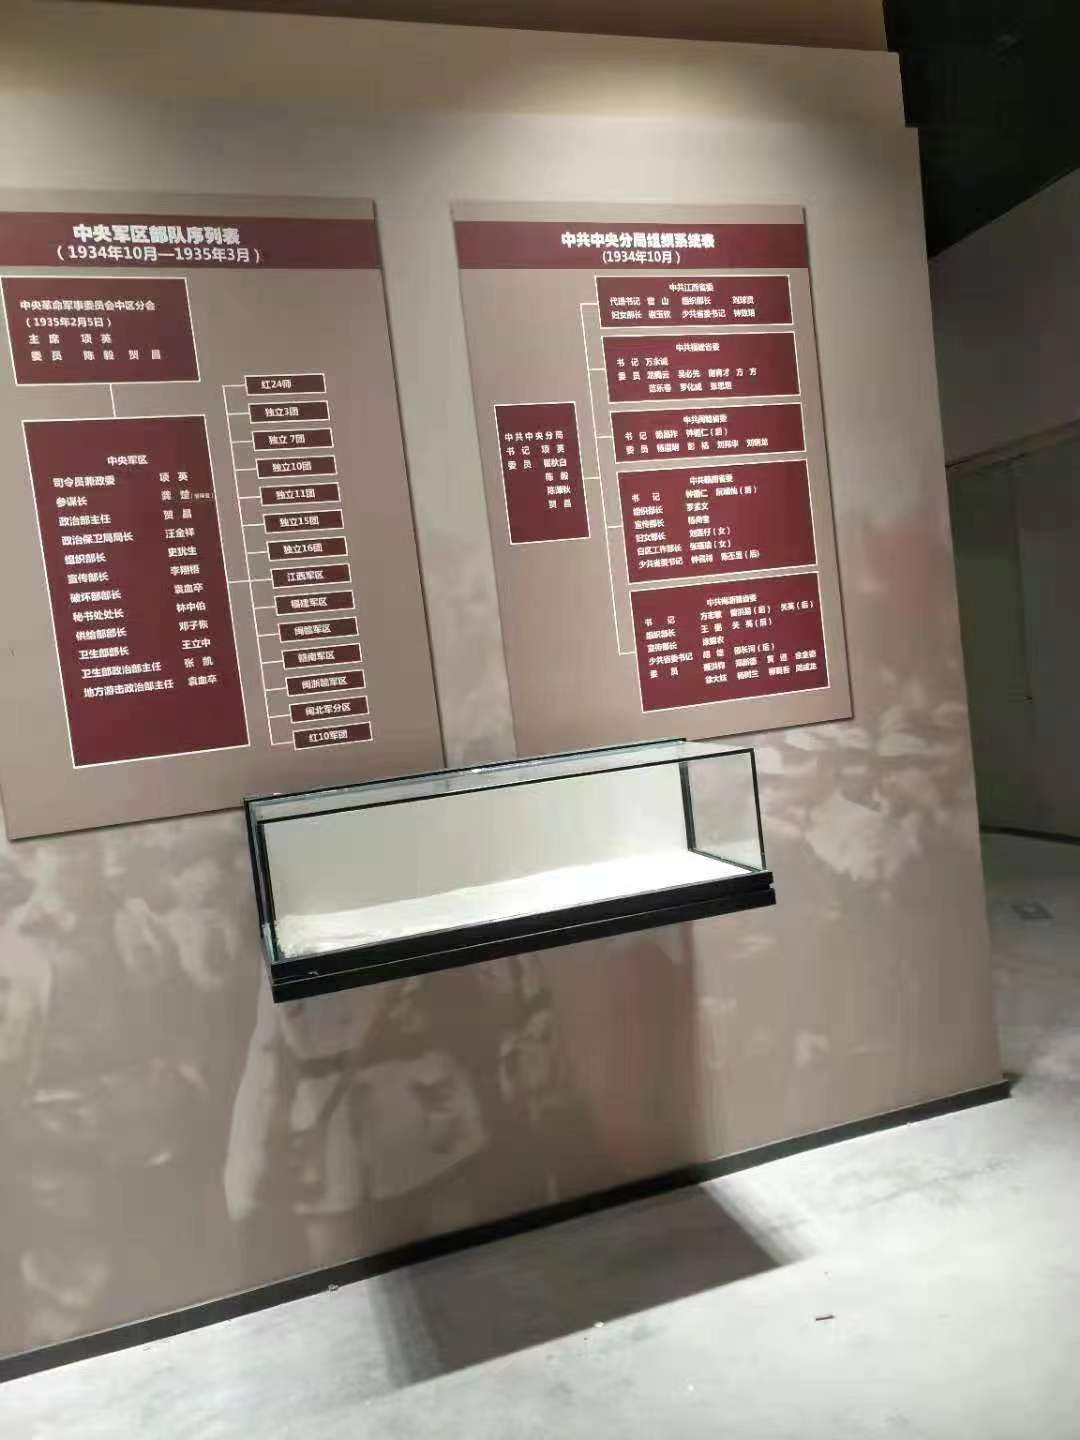 博物馆古玩展柜馆历史文化遗址展厅陈列展览展示柜台定制